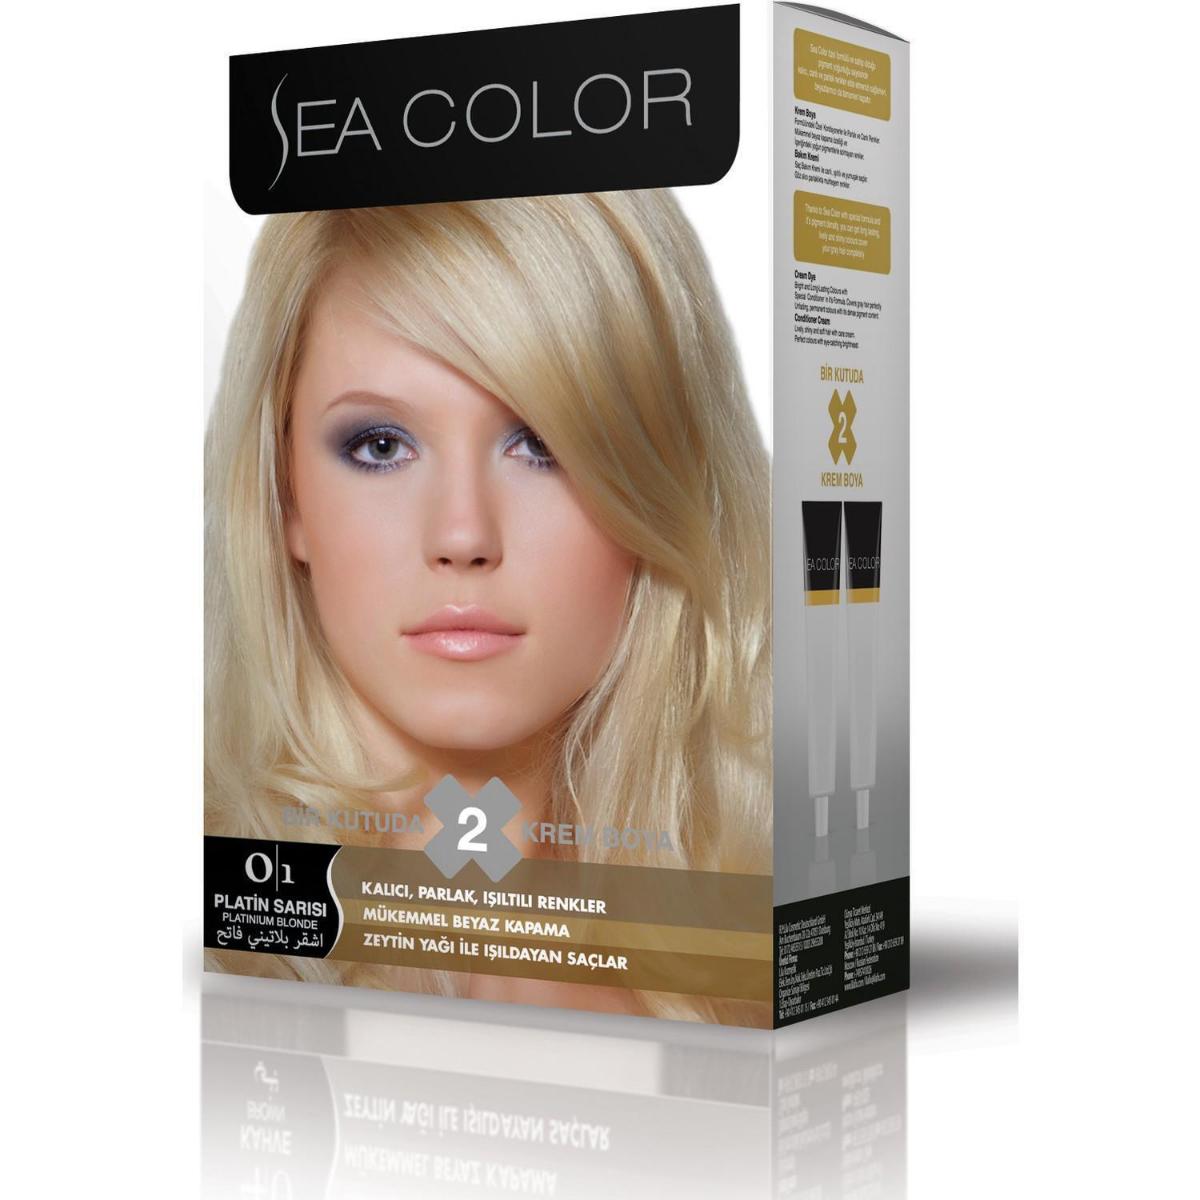 Sea Color 0.1 Platin Sarısı Krem Saç Boyası